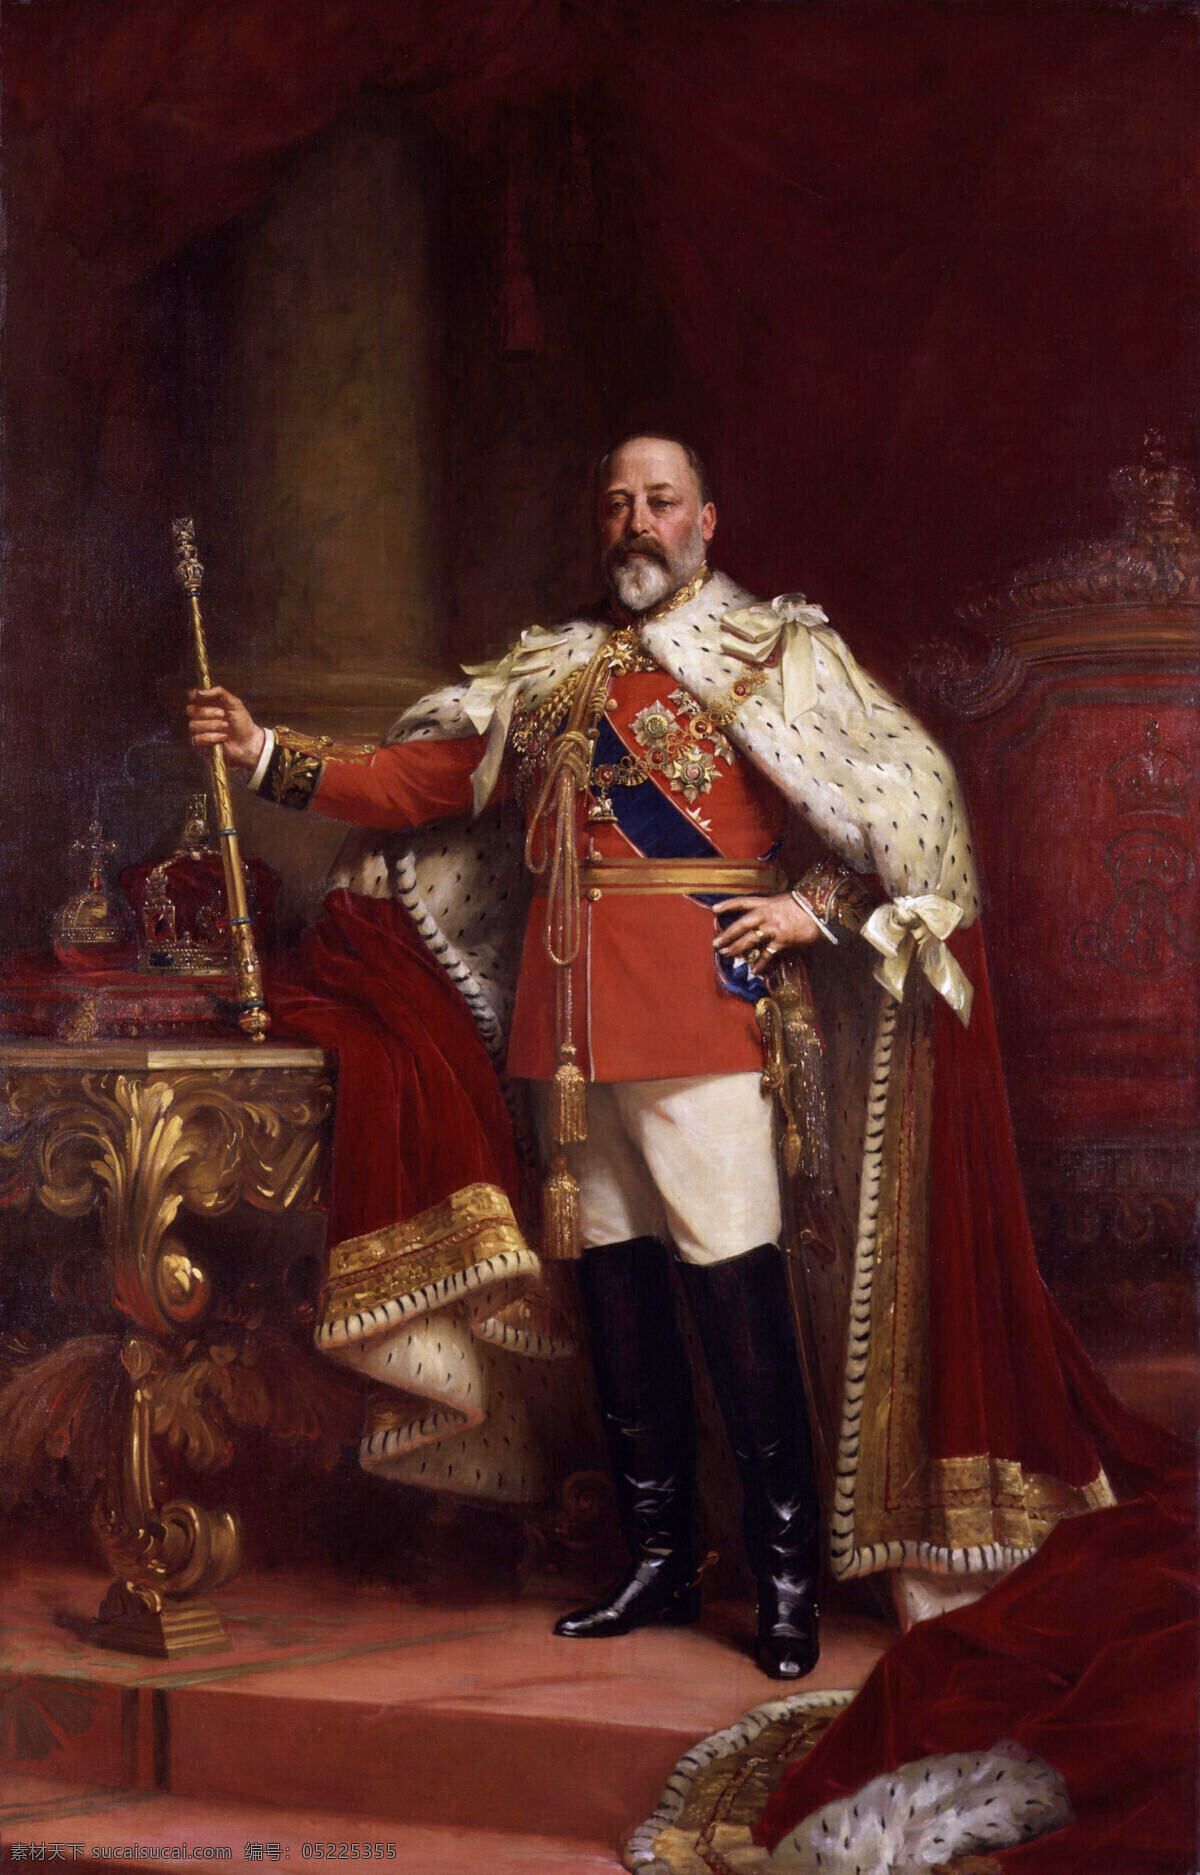 爱德华七世 卢克菲尔德斯 作品 英国国王 继位 手技权杖 加冕 19世纪油画 油画 文化艺术 绘画书法